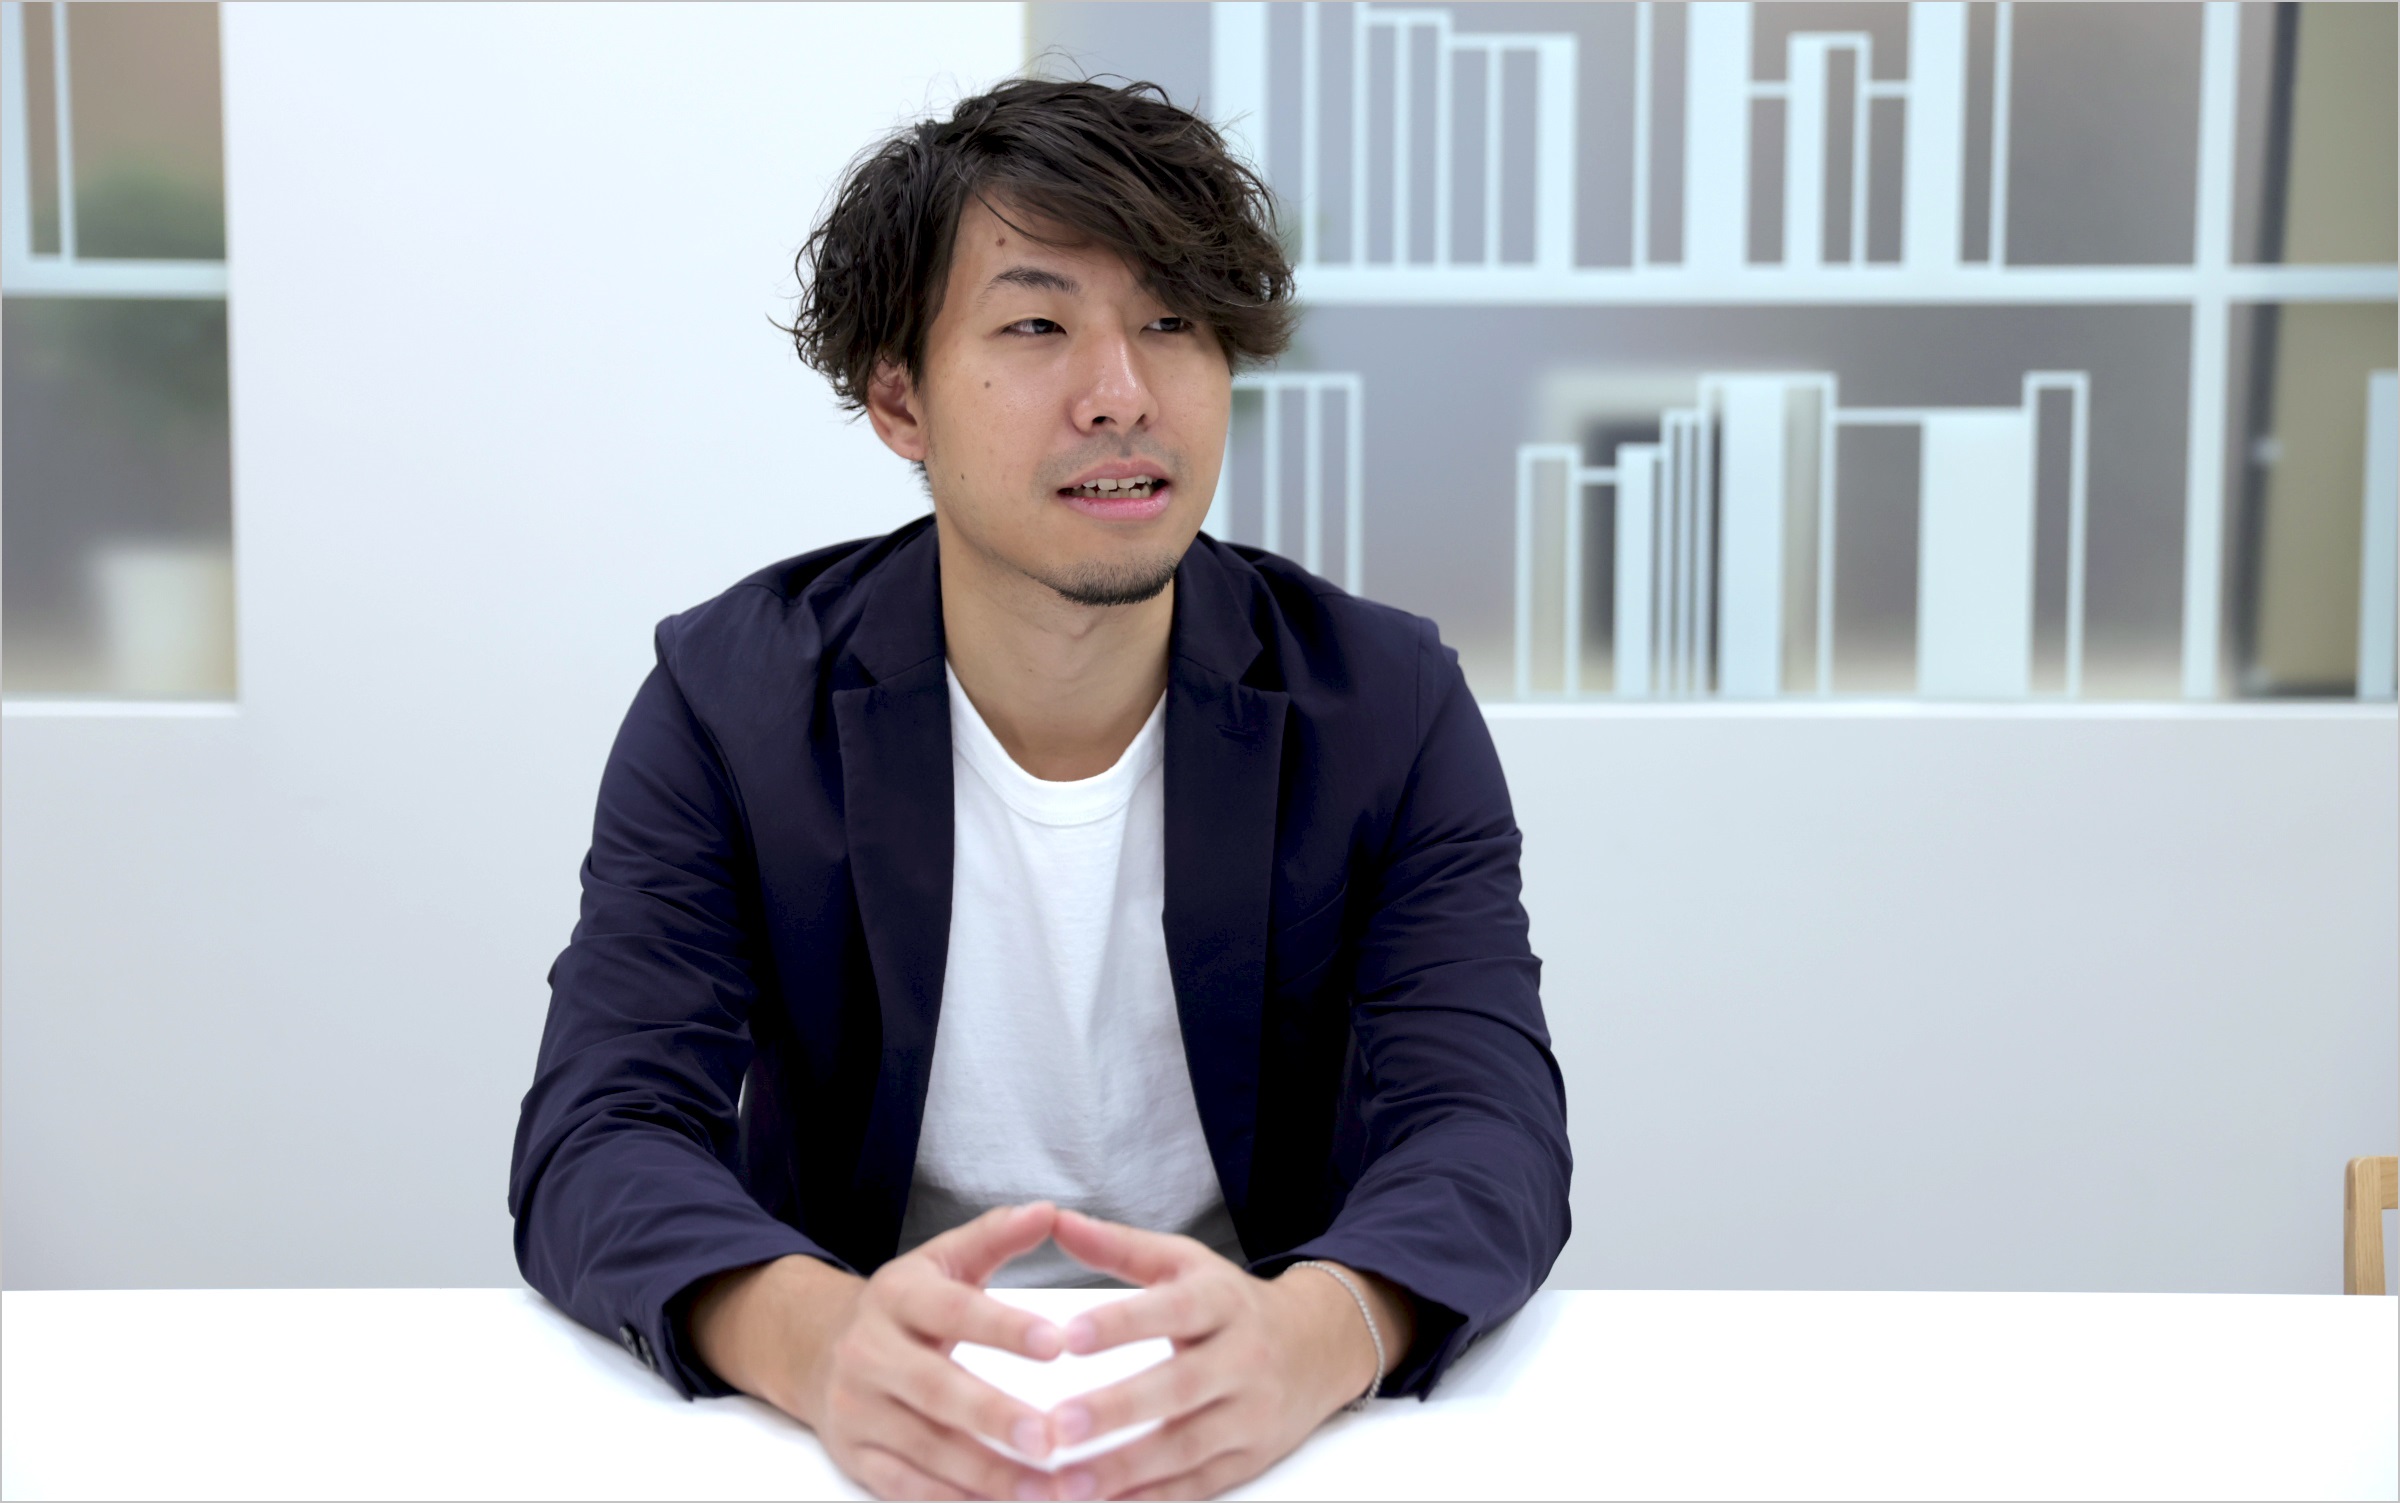 菅原が椅子に座りながら、自身の担当業務についてインタビューに答えている様子の写真